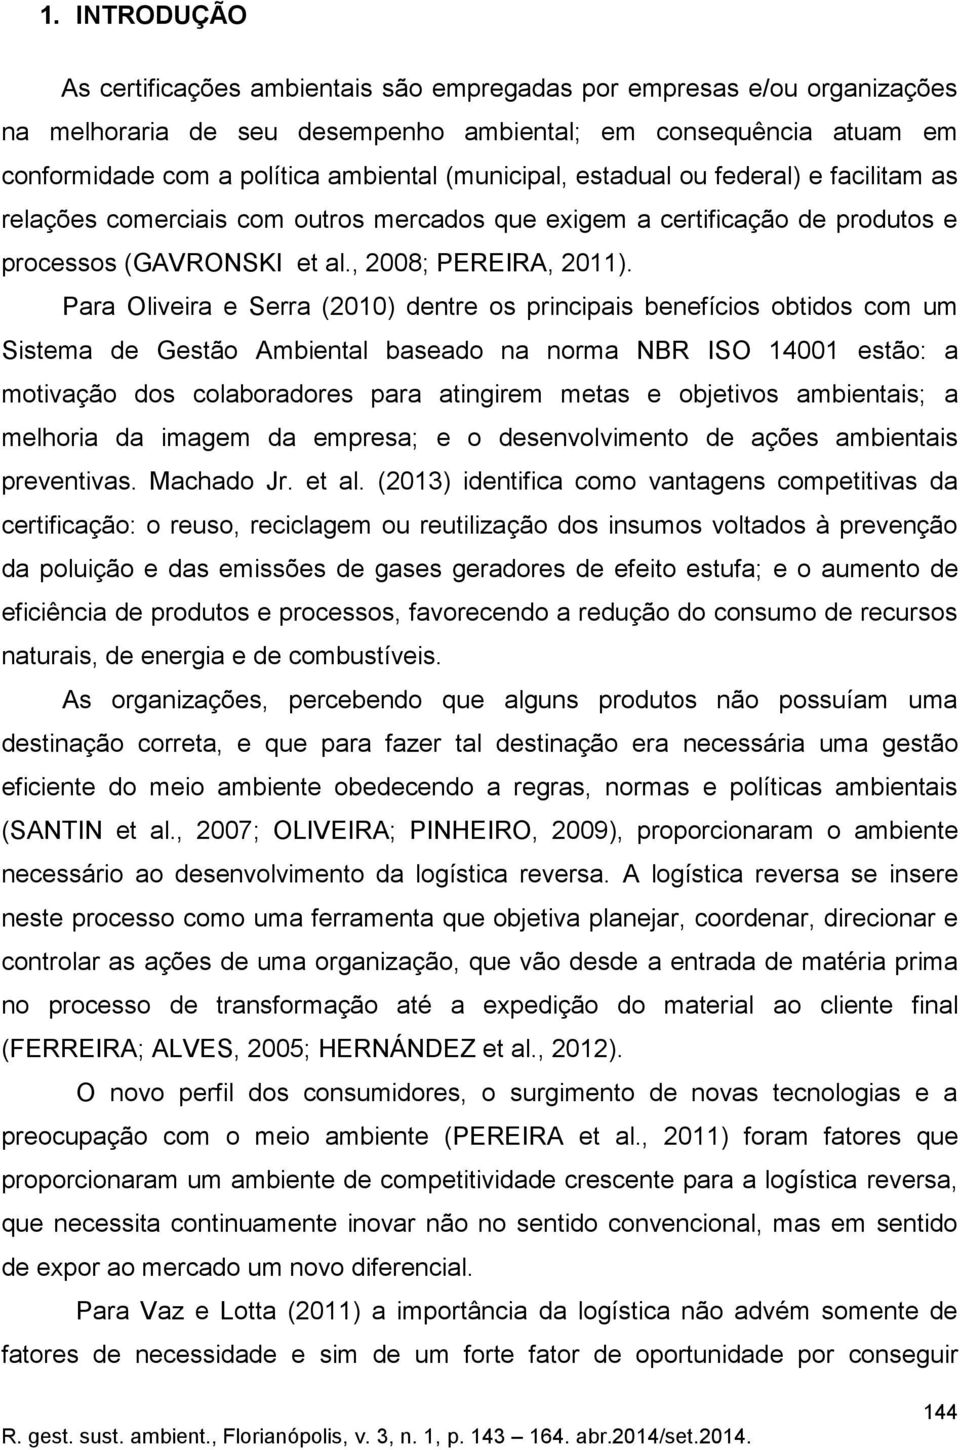 Para Oliveira e Serra (2010) dentre os principais benefícios obtidos com um Sistema de Gestão Ambiental baseado na norma NBR ISO 14001 estão: a motivação dos colaboradores para atingirem metas e